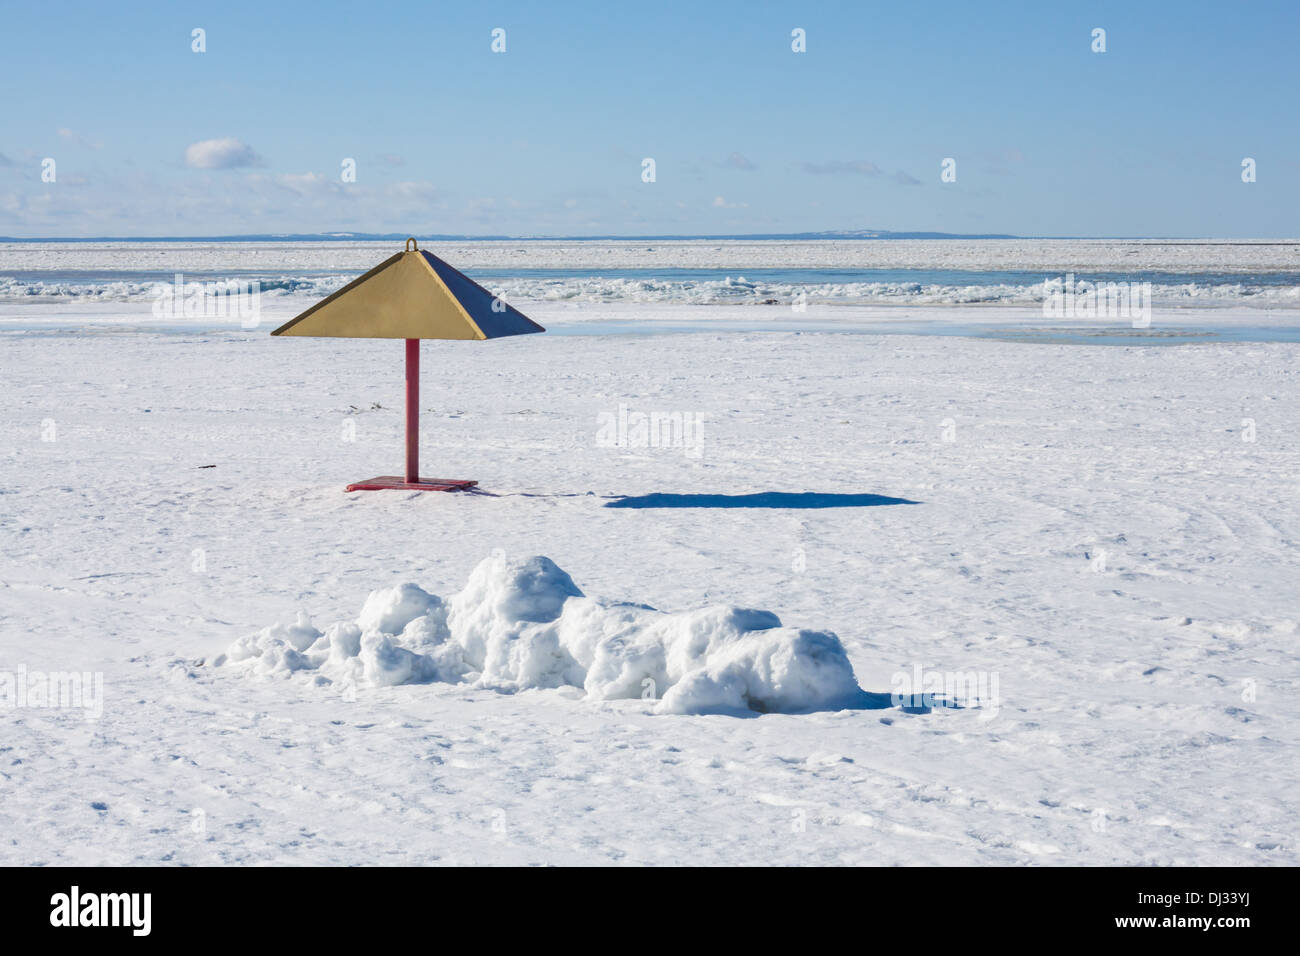 L'hiver, paysage, neige, glace, personne, 'Snowy beach' 'frozen' 'plage mer gelée' 'snowy' mer ciel bleu 'parasol' Banque D'Images